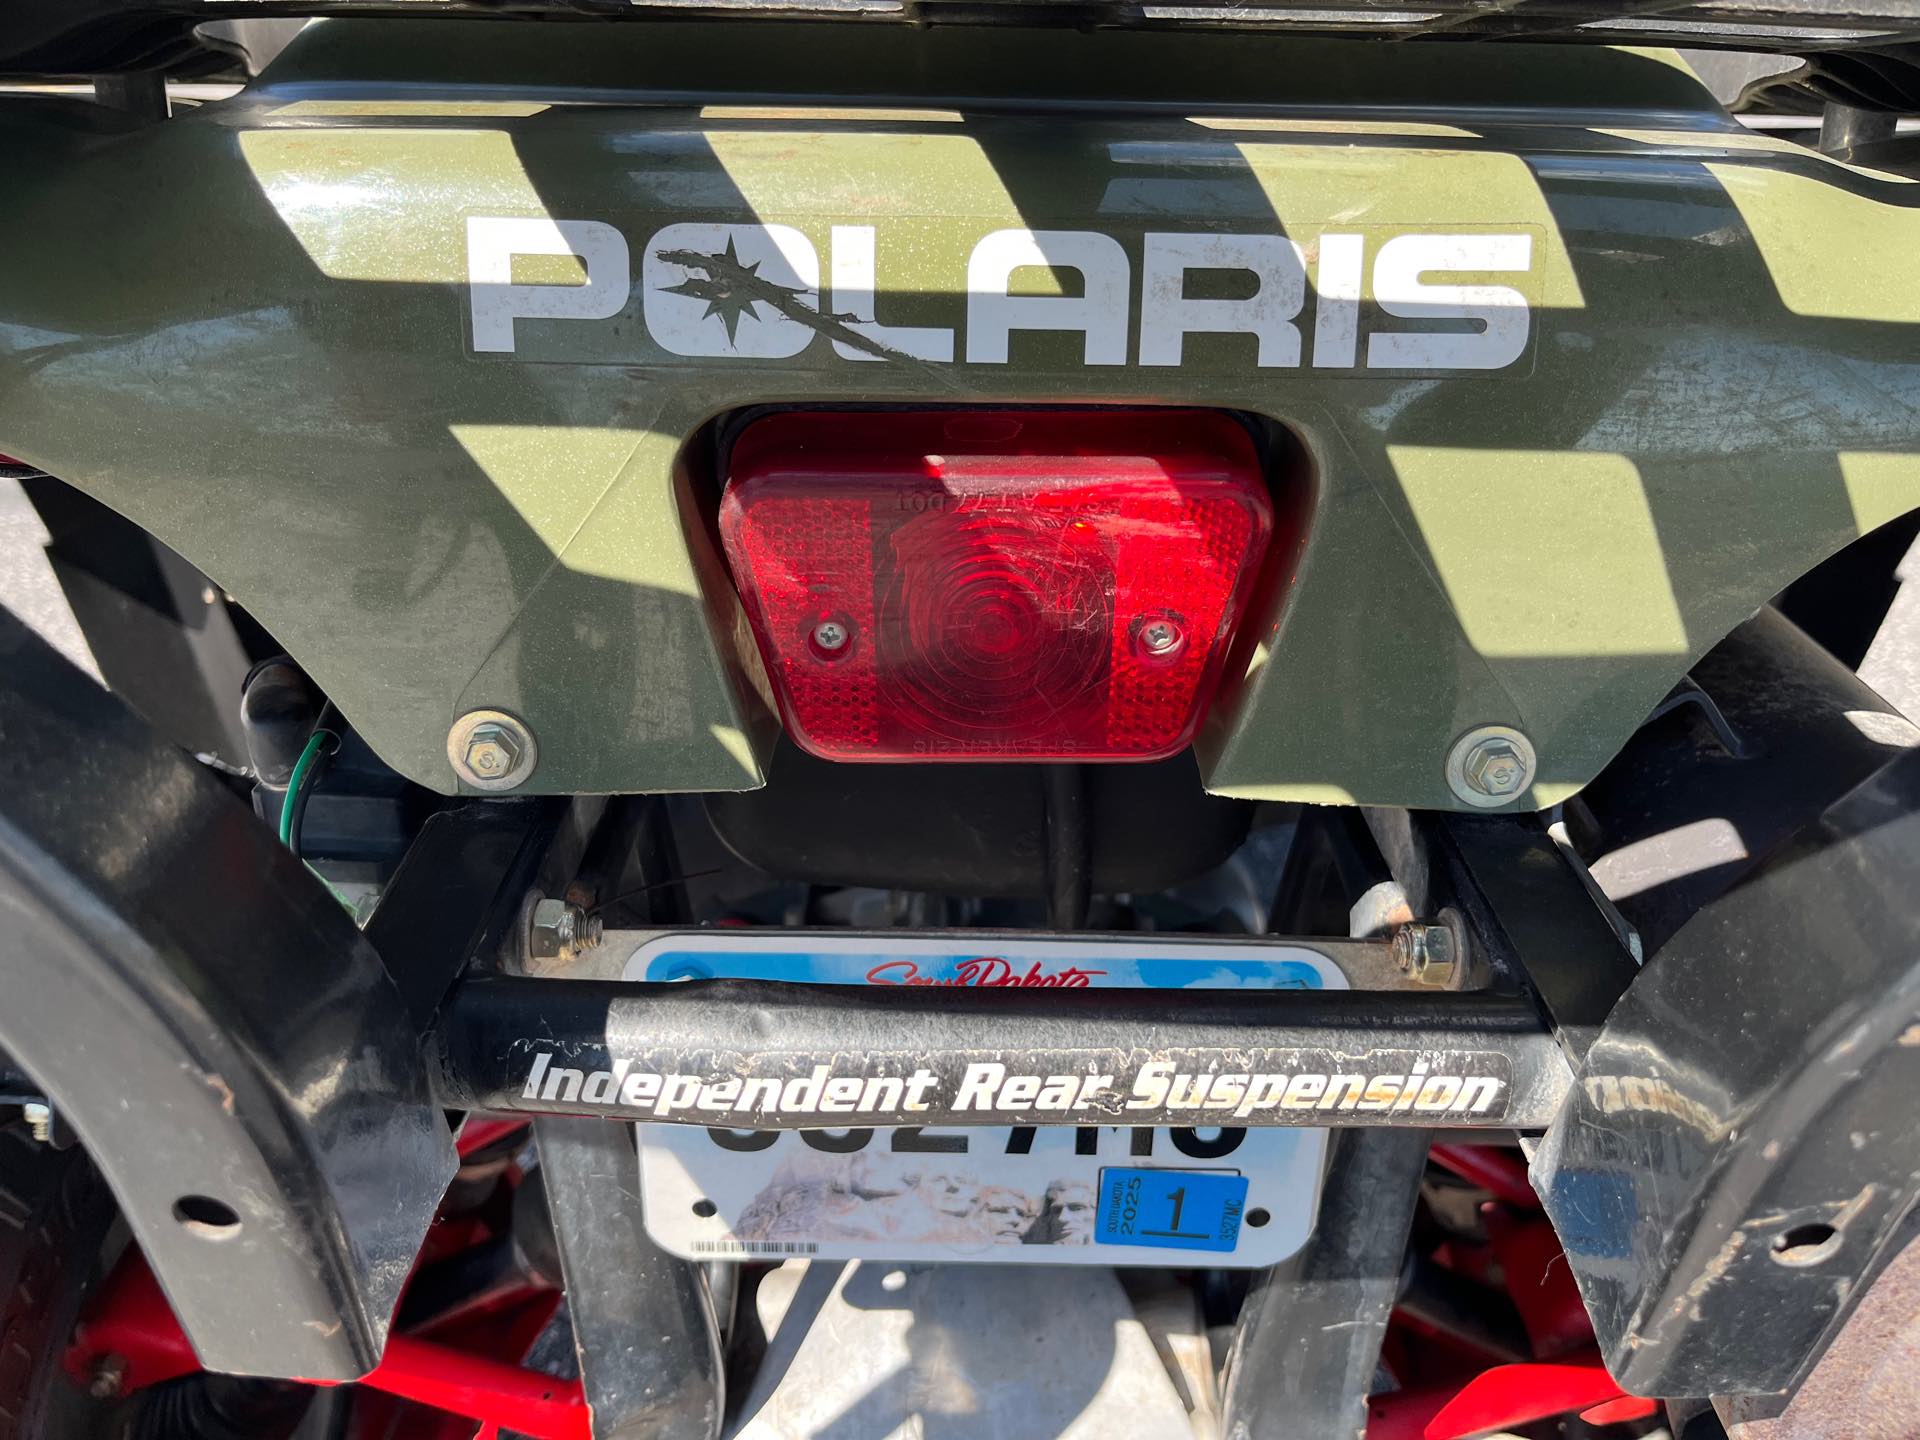 2004 Polaris Sportsman 400 at Mount Rushmore Motorsports